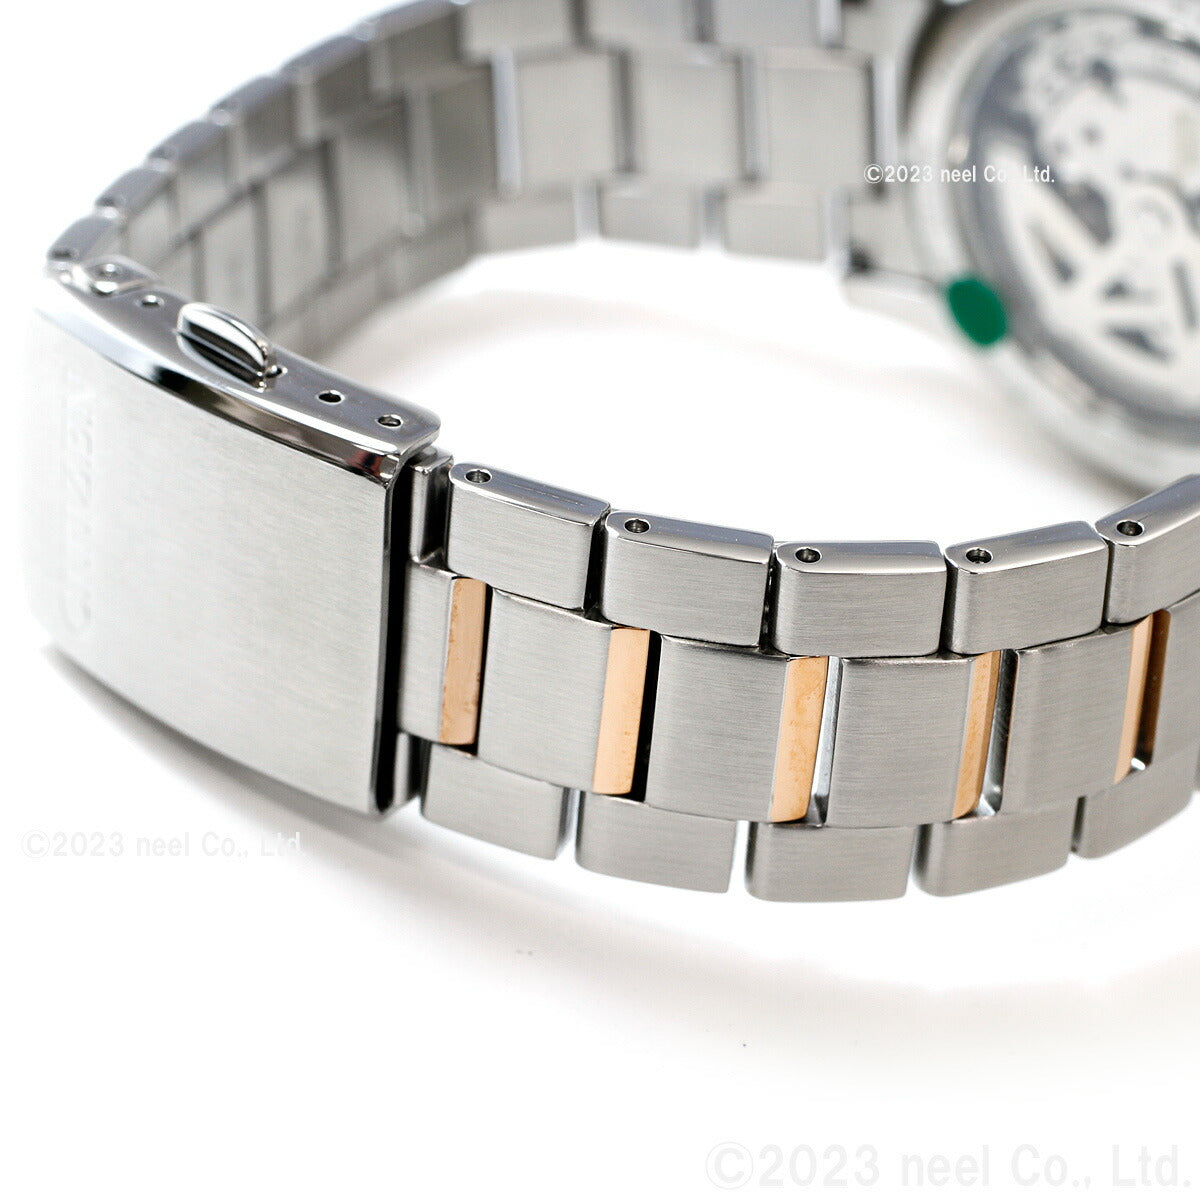 シチズンコレクション CITIZEN COLLECTION メカニカル 自動巻き 機械式 腕時計 メンズ NP1014-77E オープンハート